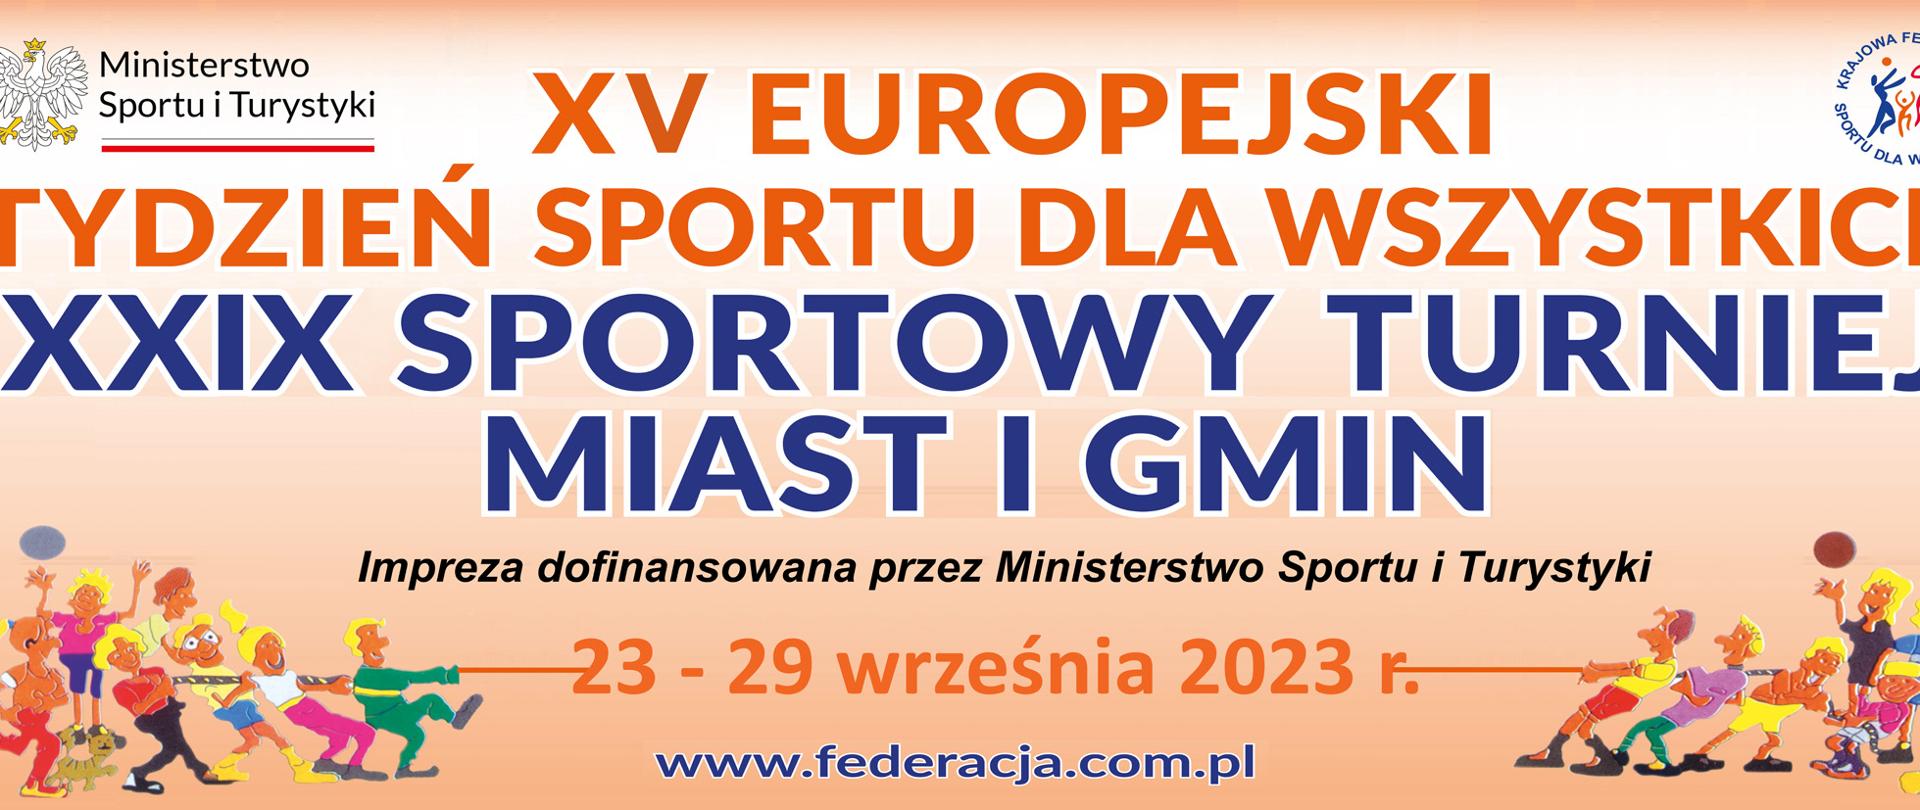 Banner Sportowy Turniej Miast i Gmin 